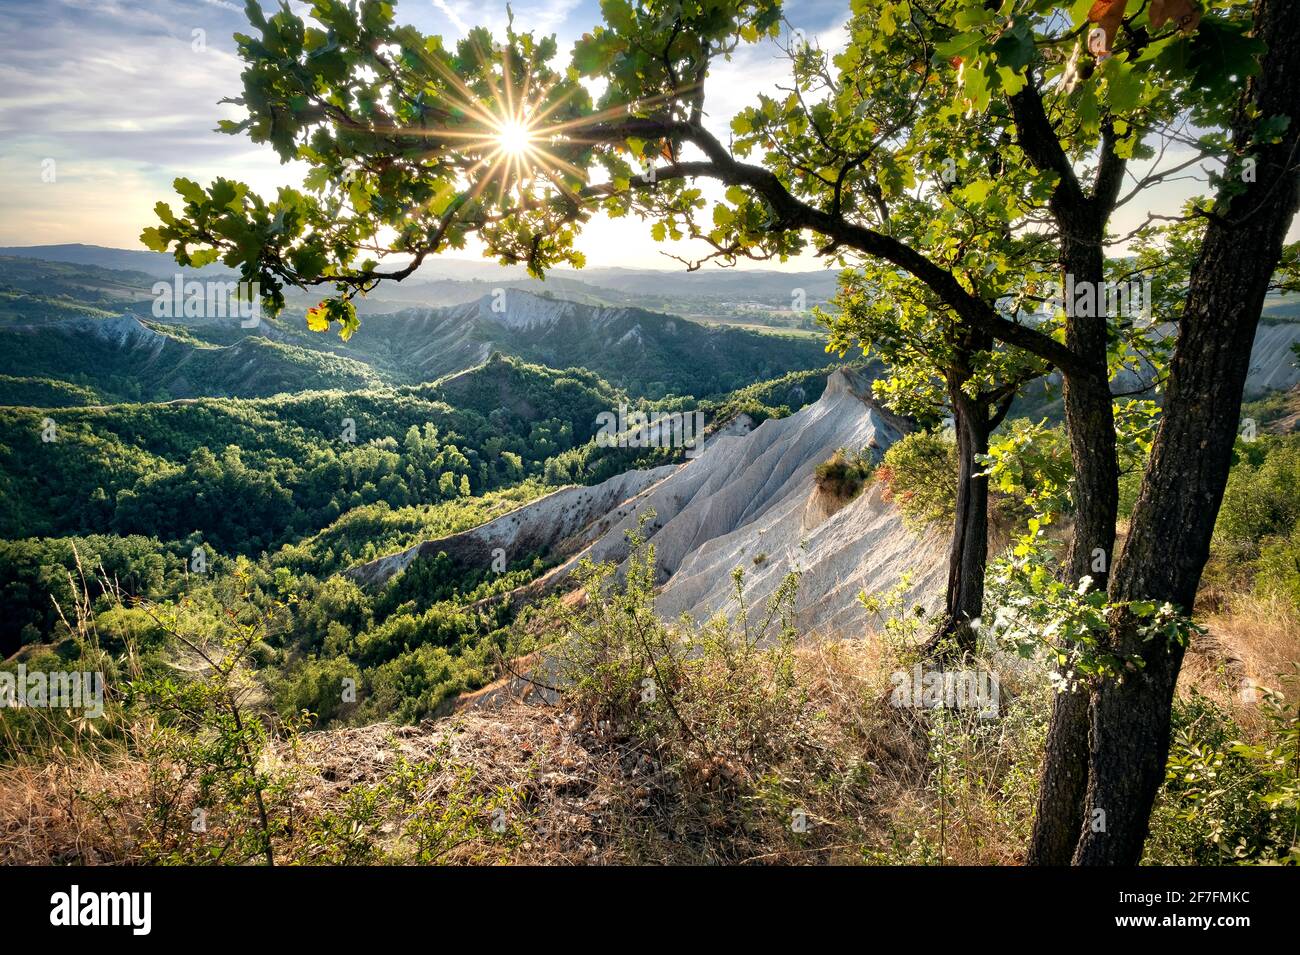 Badlands e verdi colline incorniciate da alberi e da un'esplosione di sole, Emilia Romagna, Italia, Europa Foto Stock